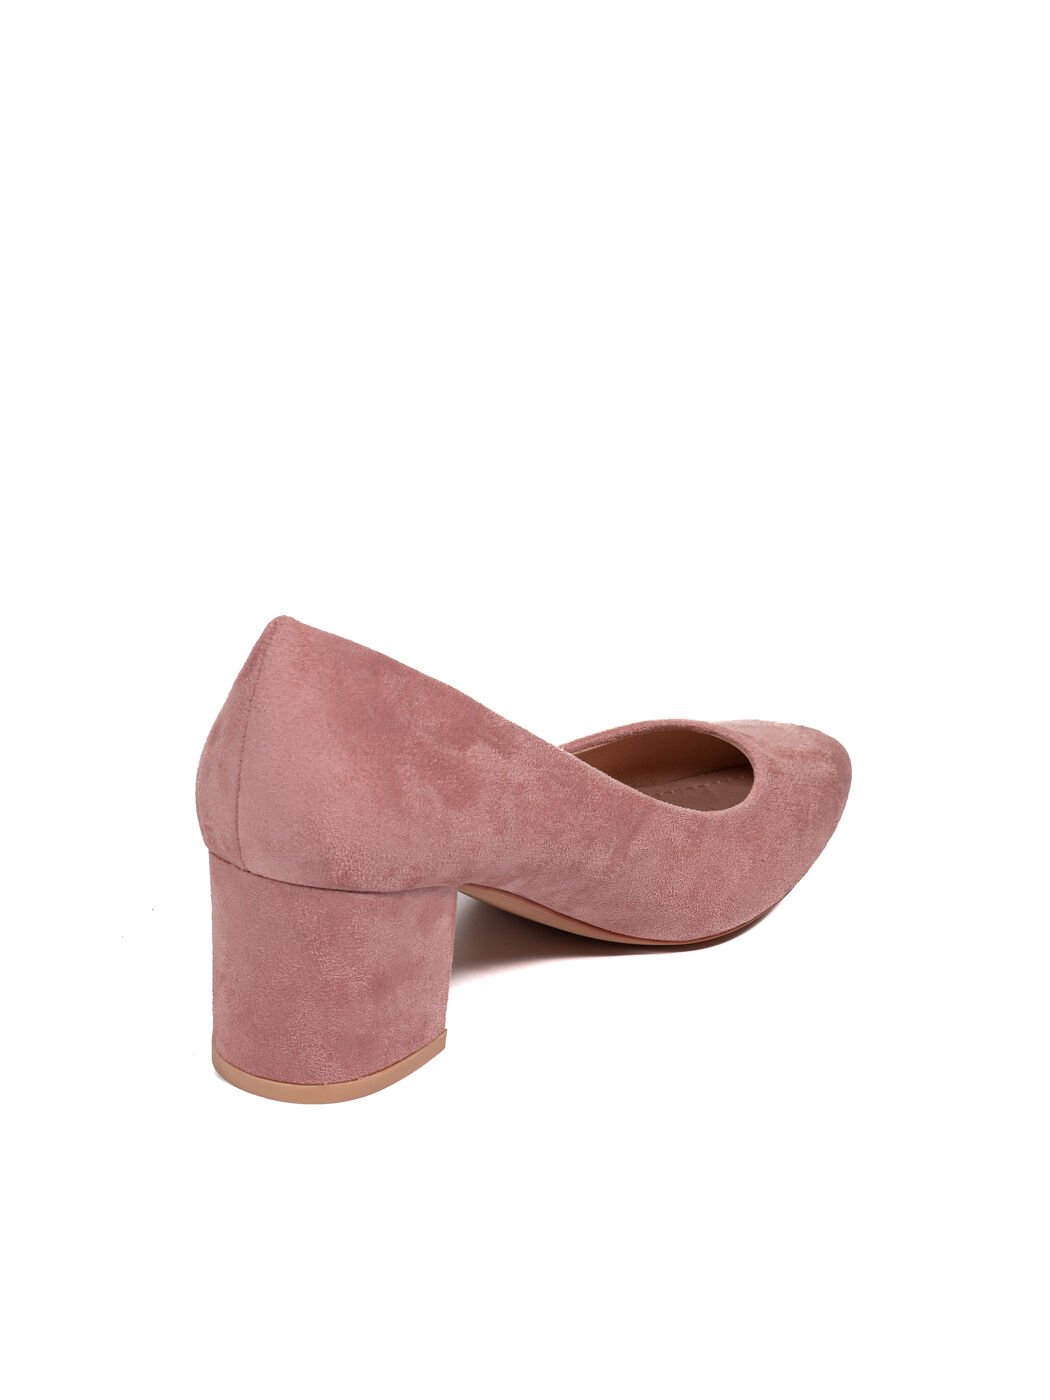 Туфли женские розовые экозамша каблук устойчивый демисезон от производителя CM вид 1